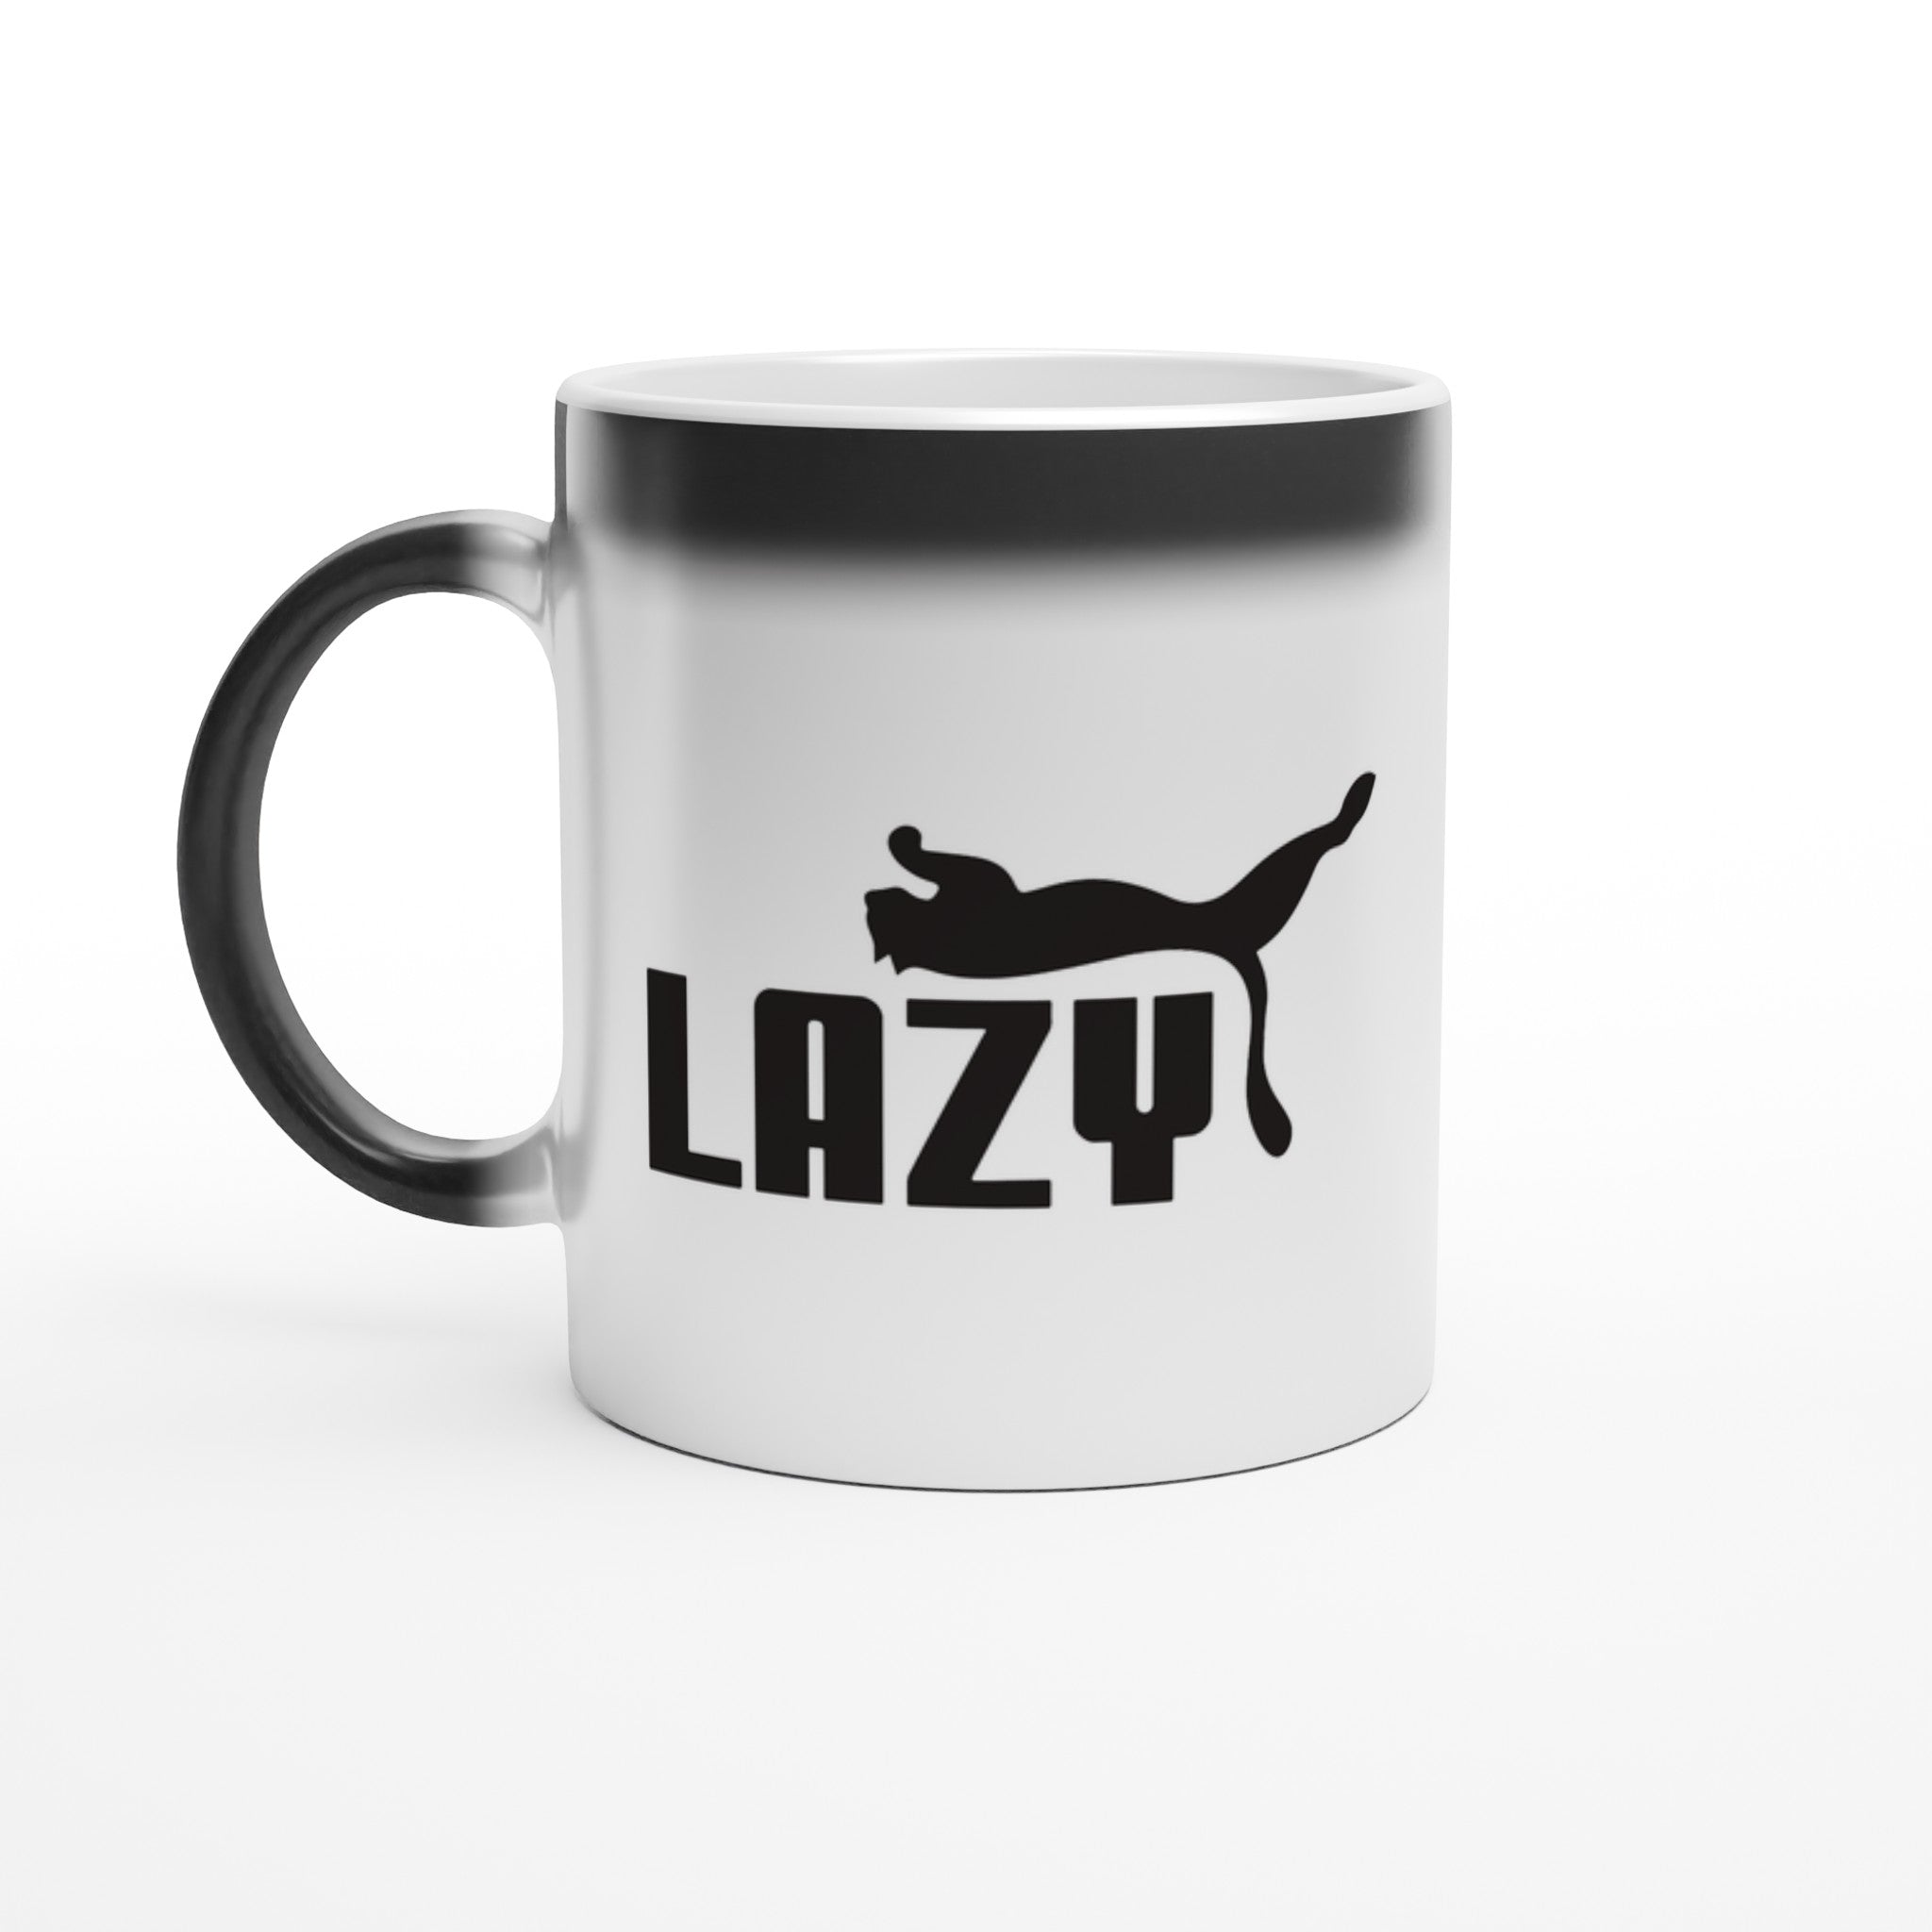 Lazy Magic Mug - Optimalprint